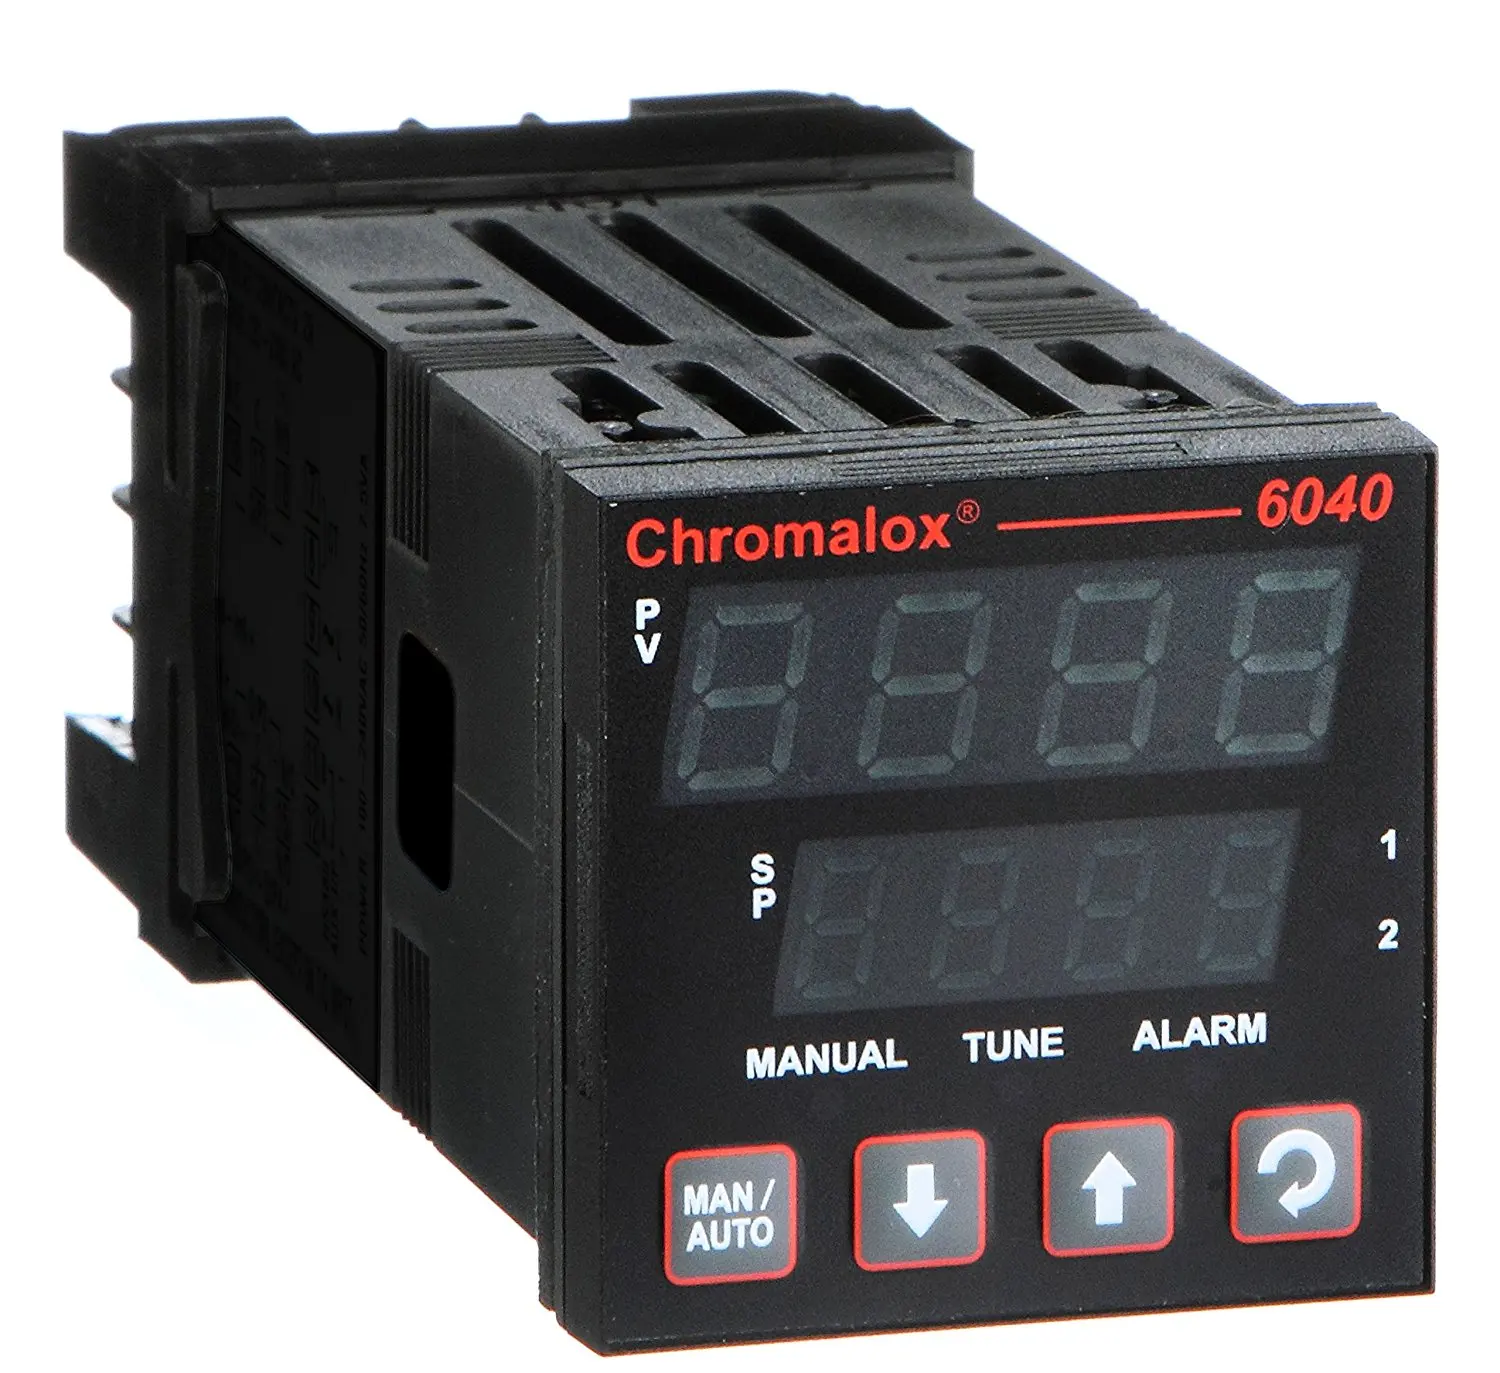 Chromalox temperature controller